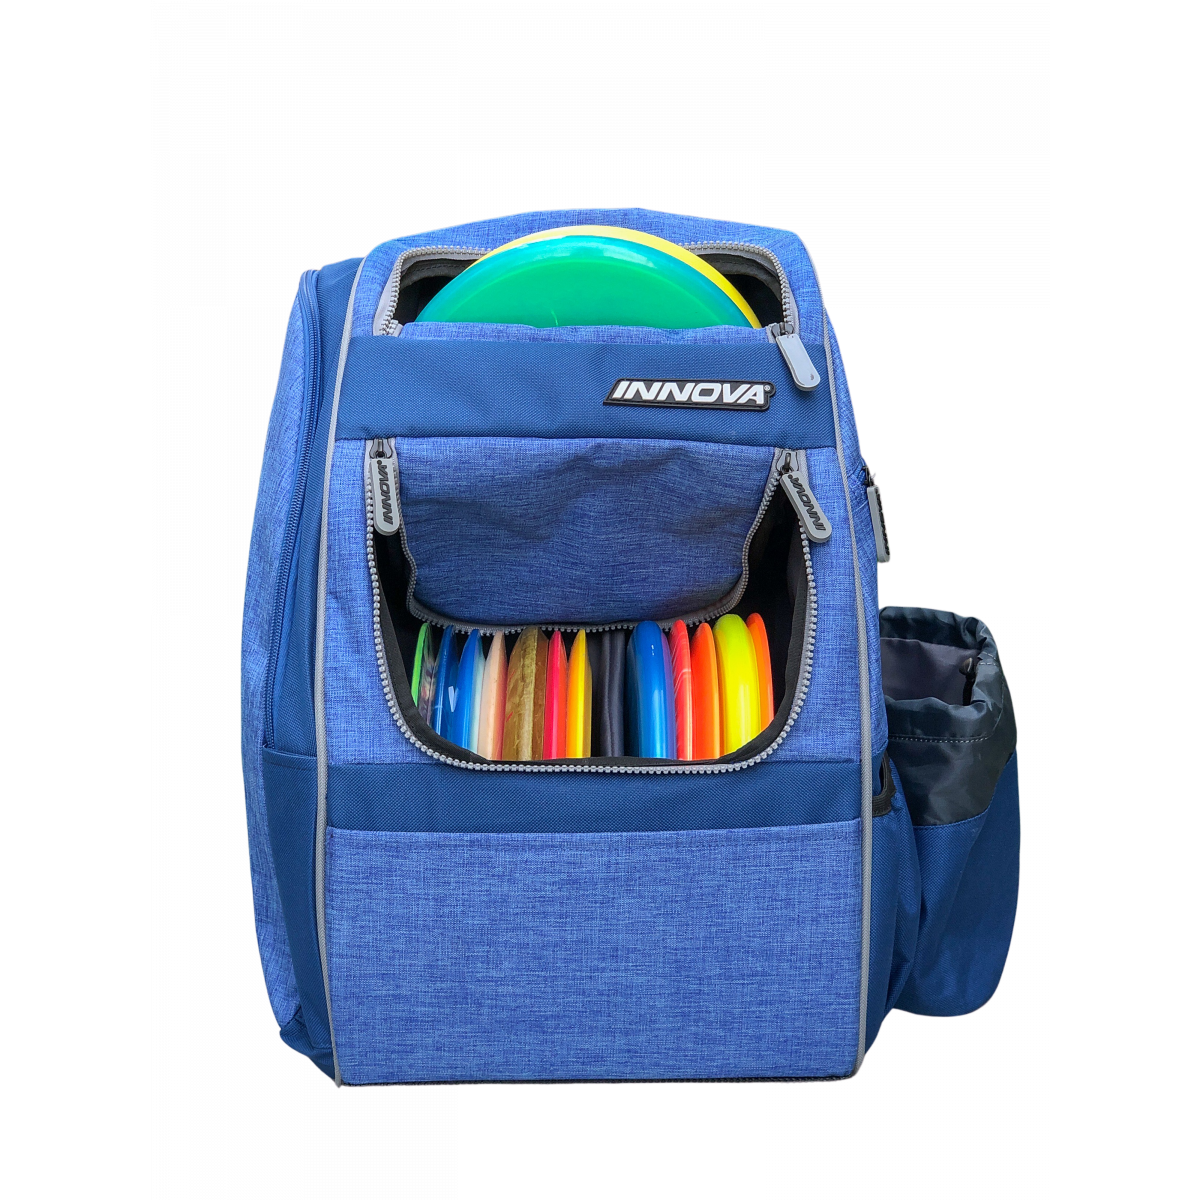 Innova Excursion Backpack Bag